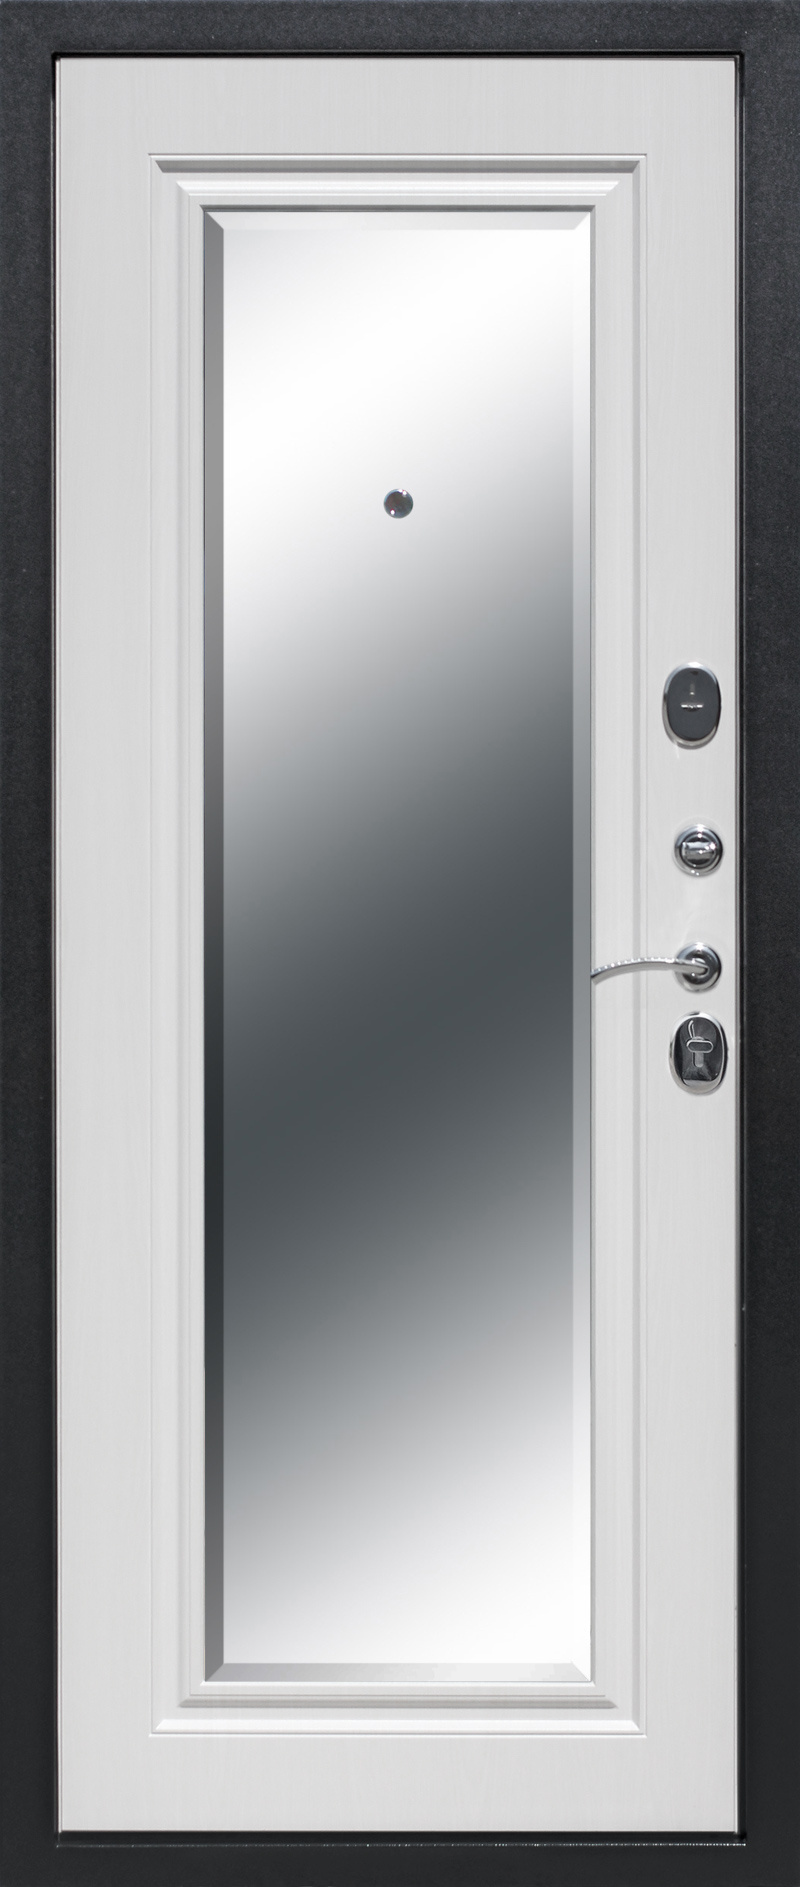 Феррони Входная дверь 7,5 см Гарда серебро зеркало фацет, арт. 0004259 - фото №1